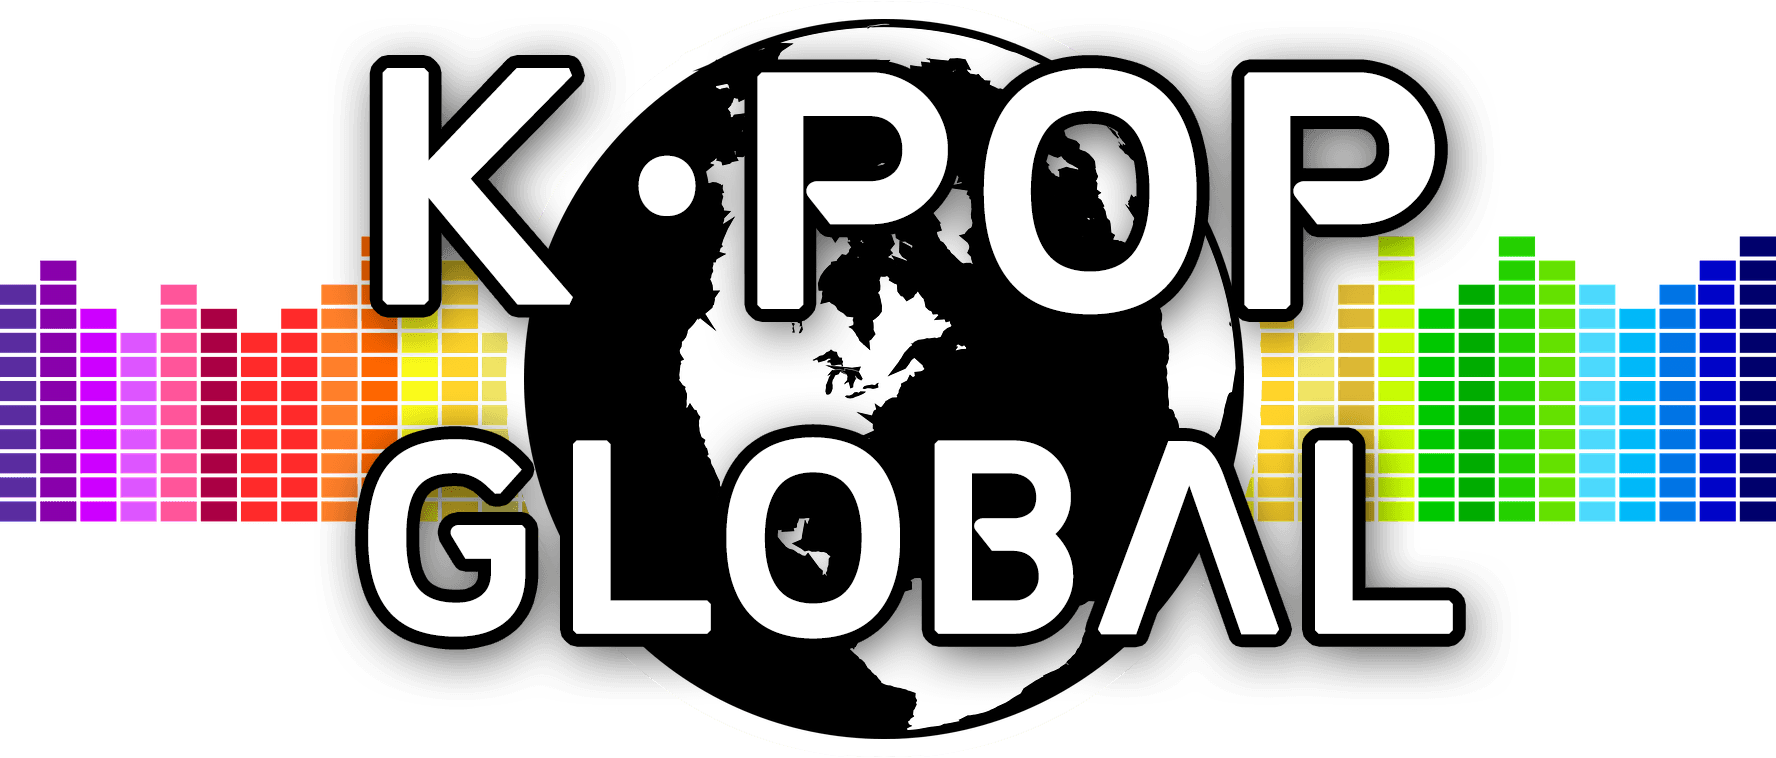 Kpop Logo - Home - K-Pop Global